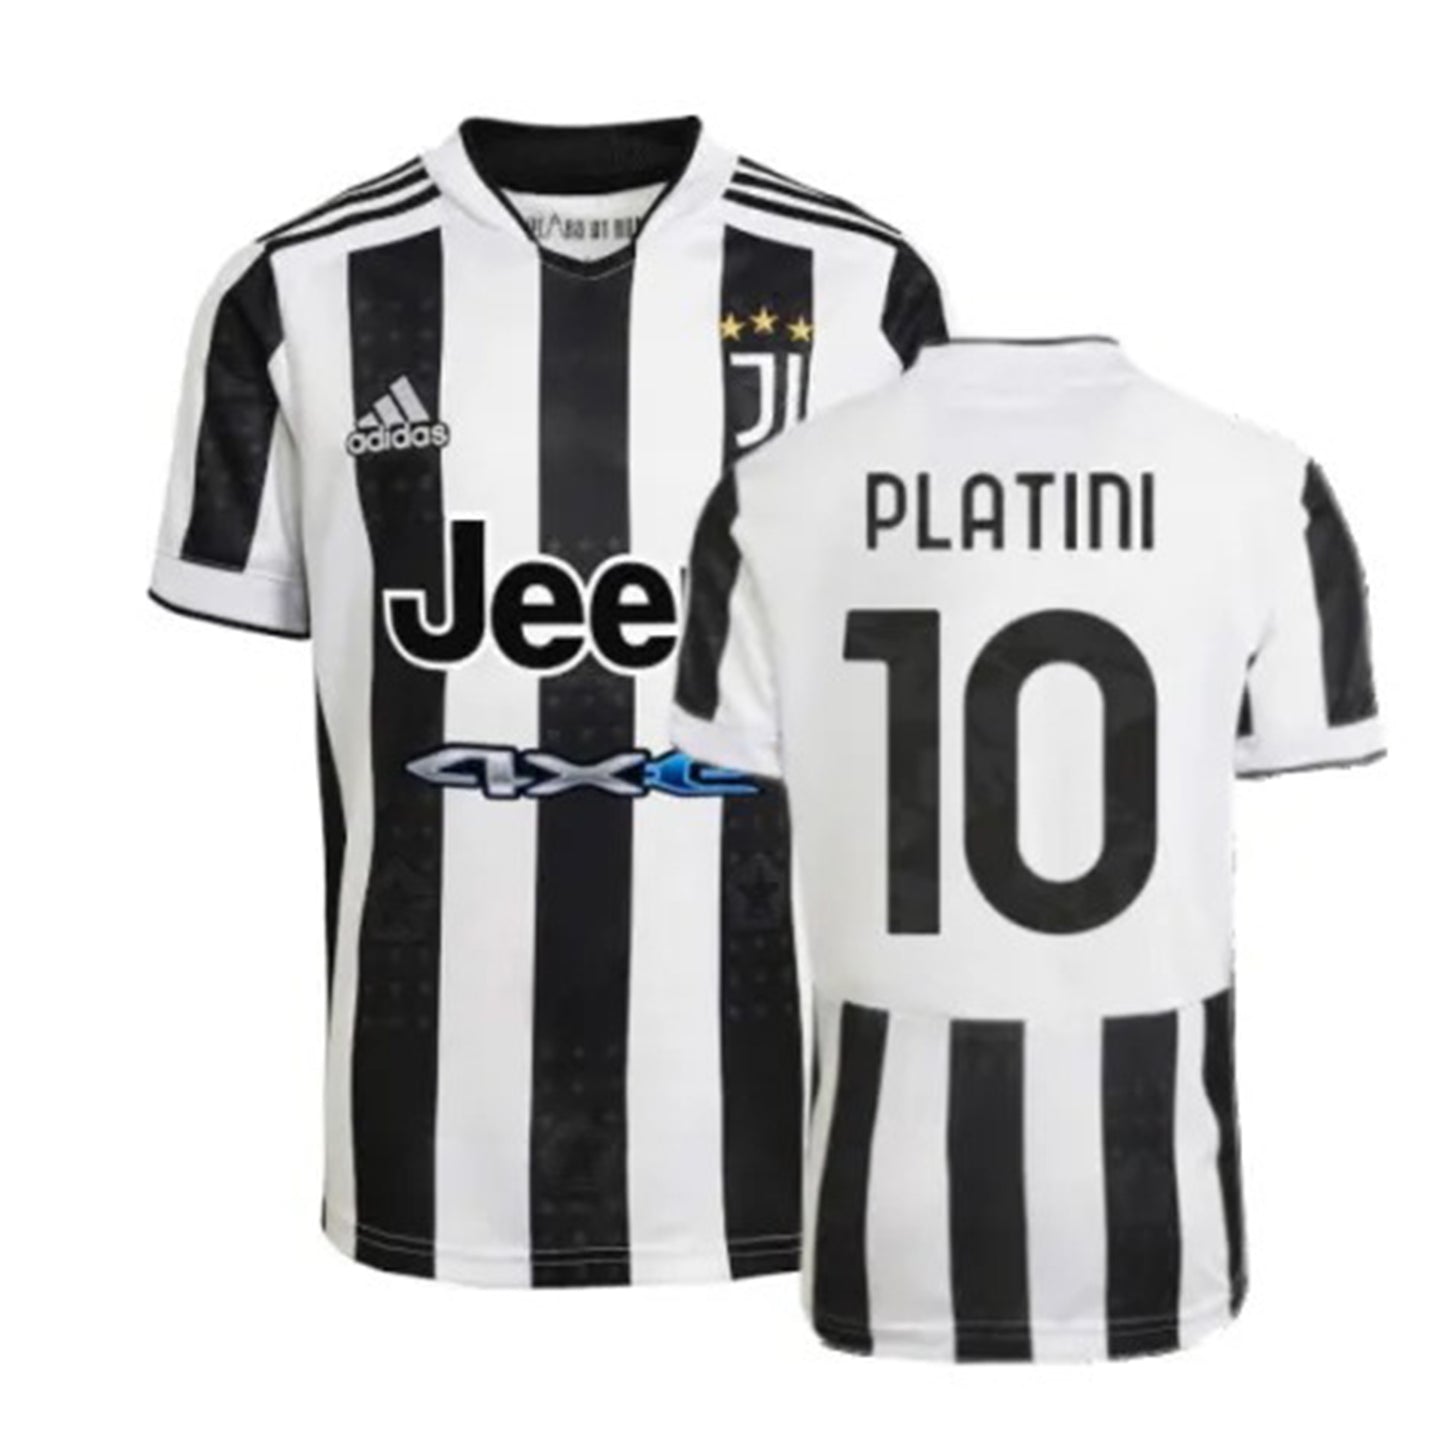 Michel Platini Juventus 10 Jersey